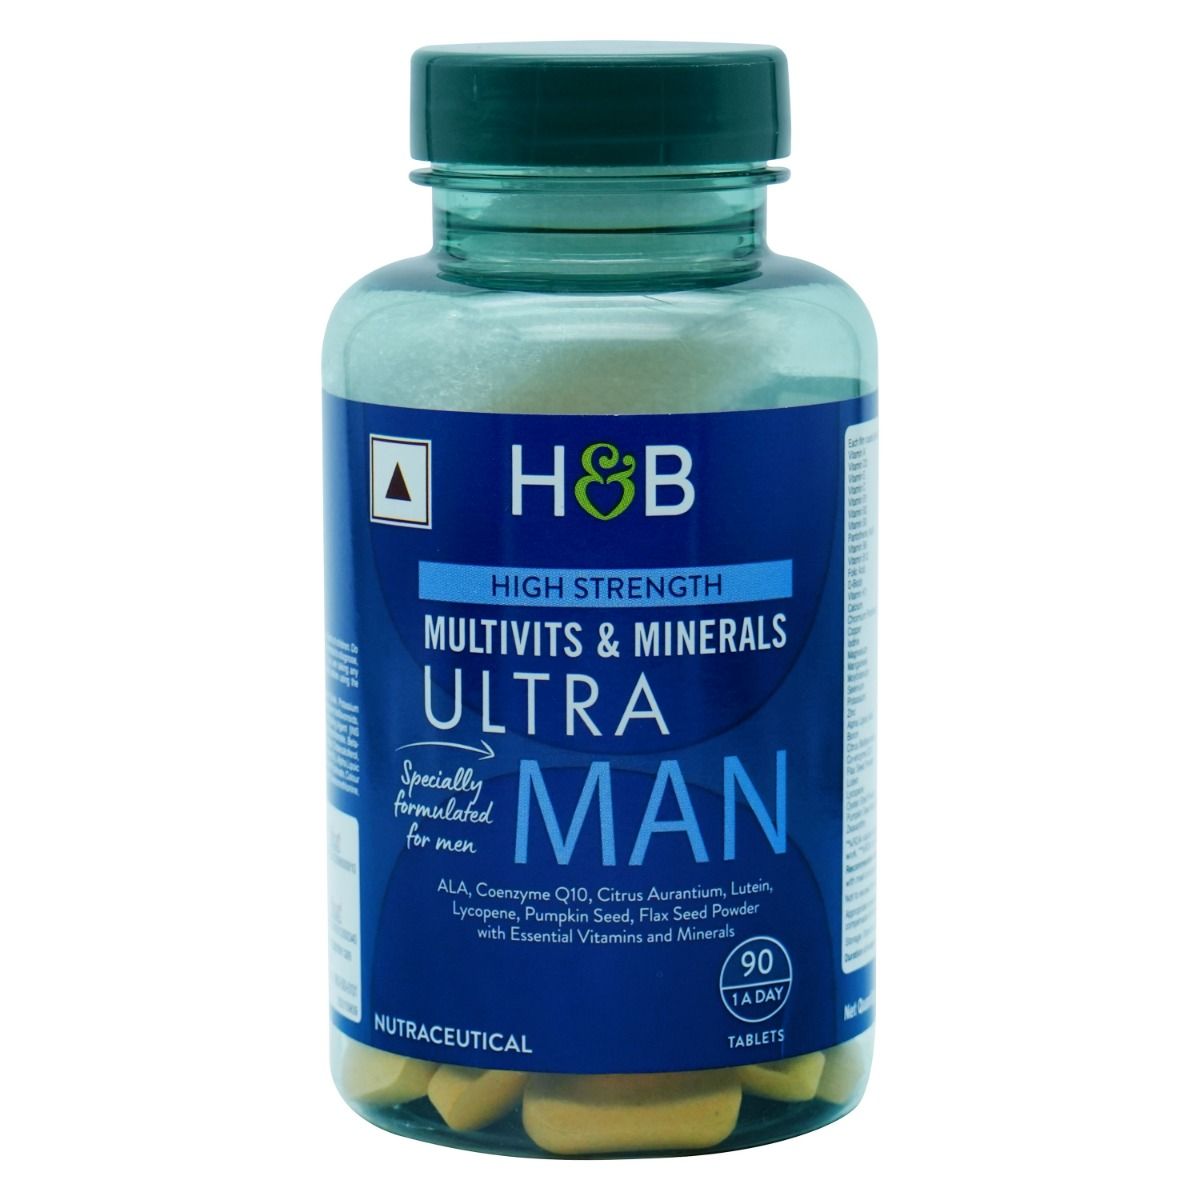 Buy Holland & Barrett High Strength Multivits & Minerals Ultra Man, 90 Tablets Online